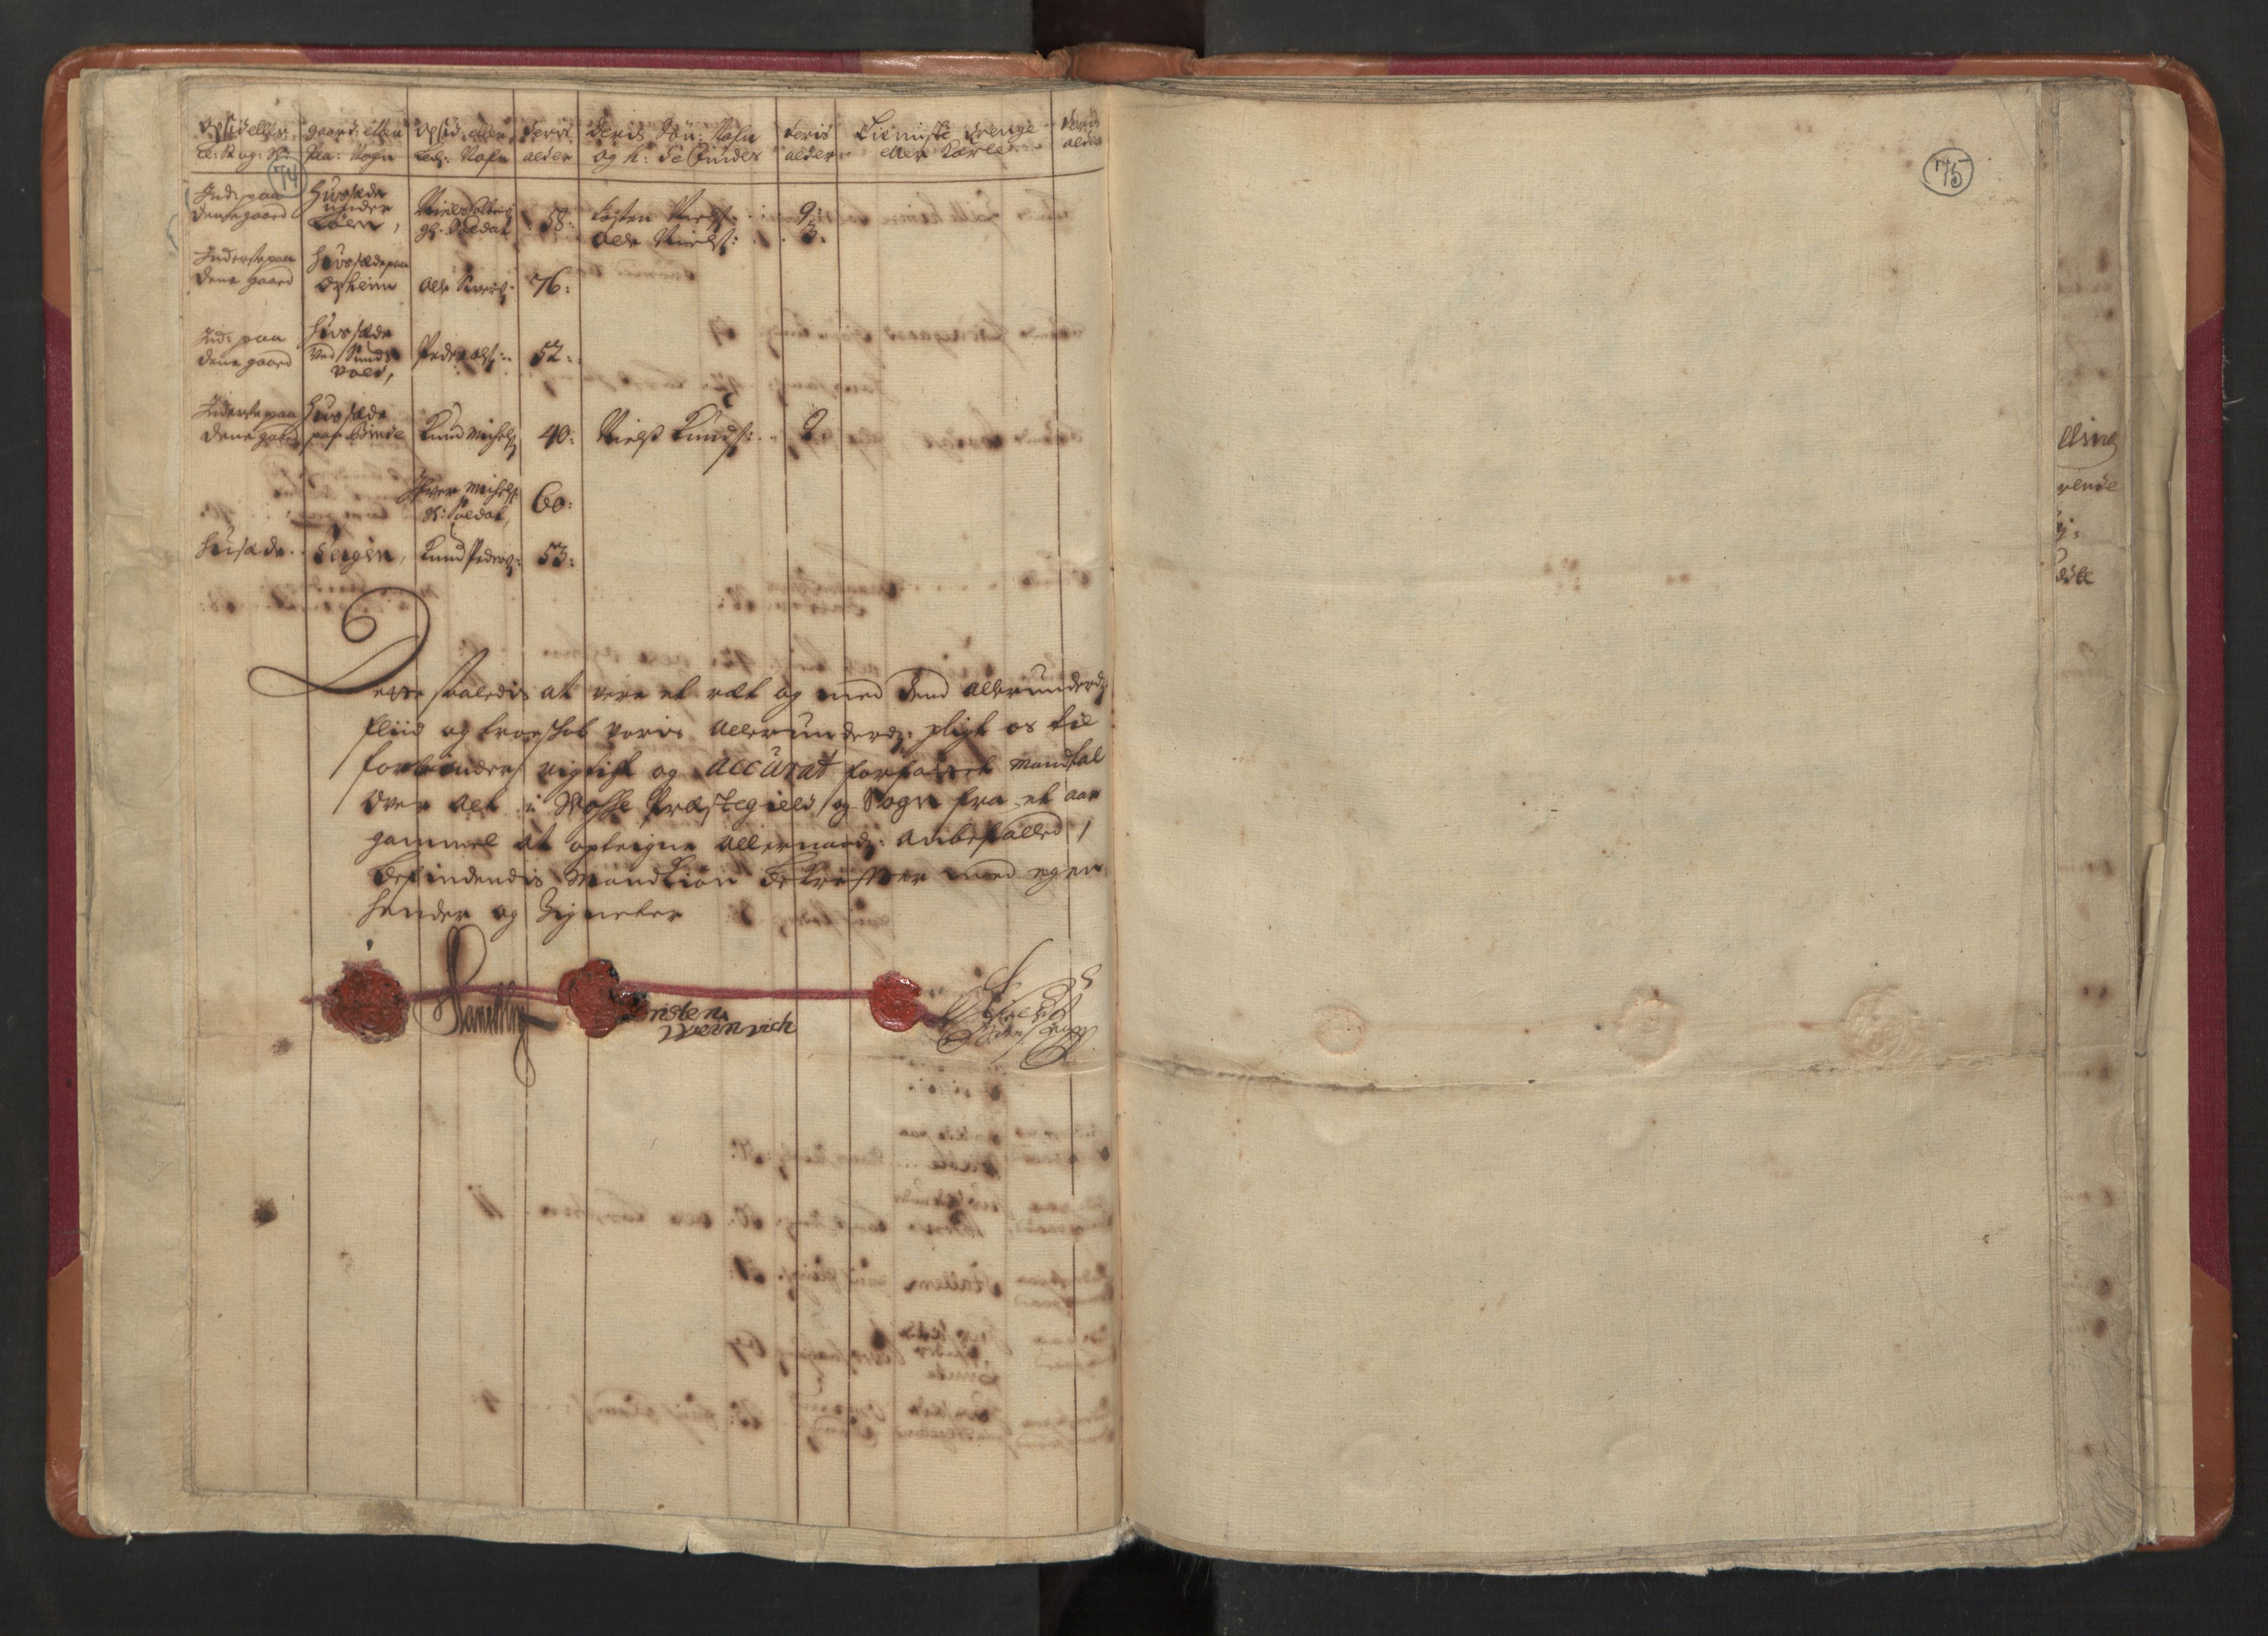 RA, Manntallet 1701, nr. 8: Ytre Sogn fogderi og Indre Sogn fogderi, 1701, s. 74-75